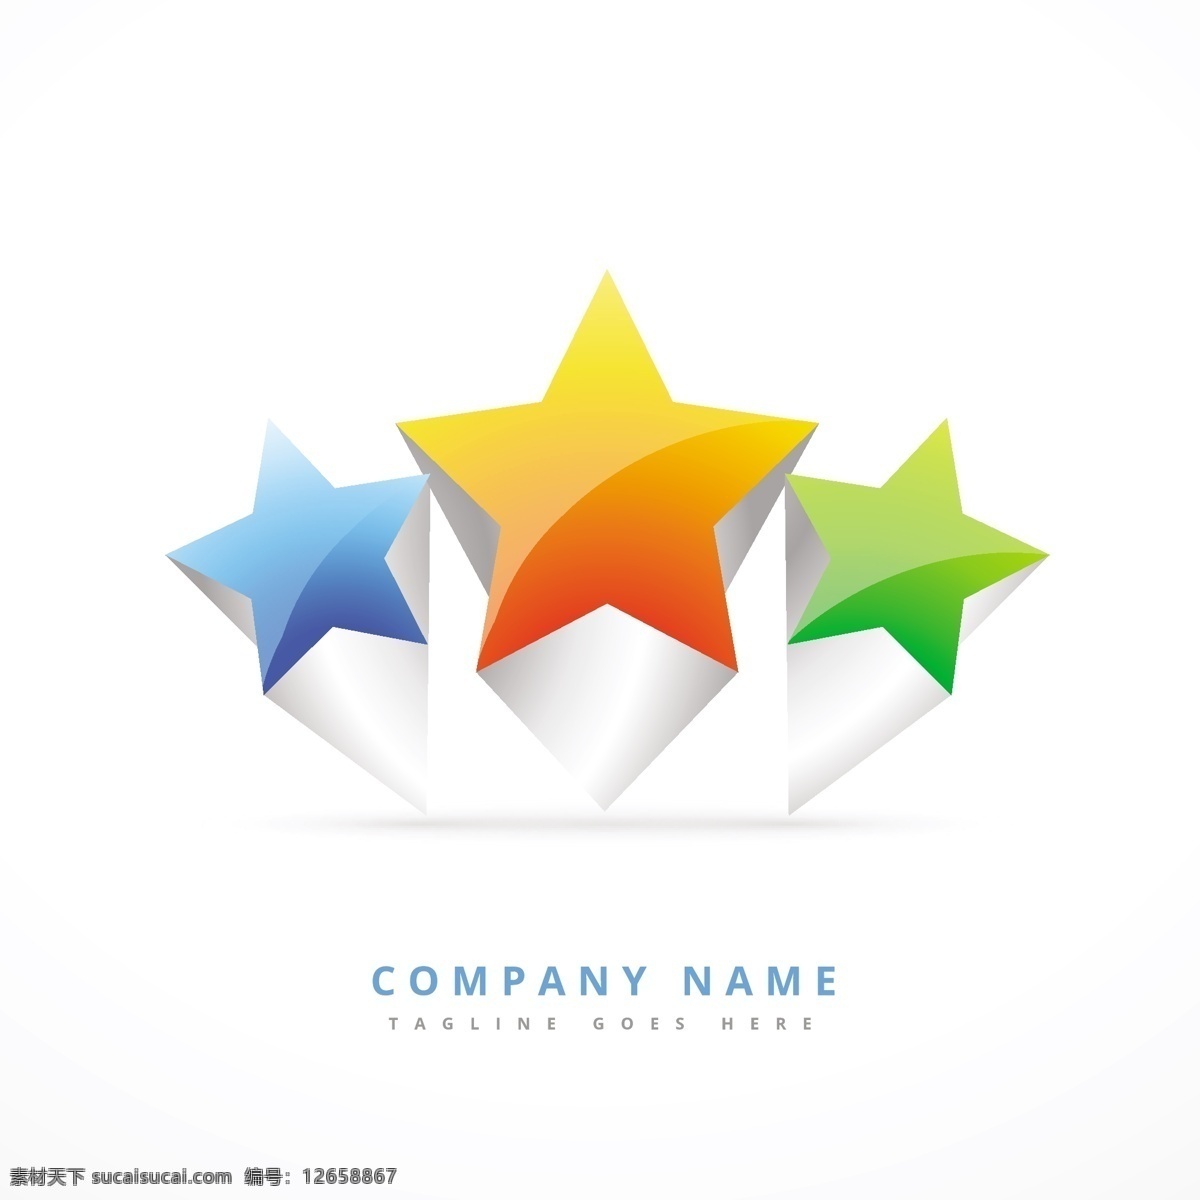 三星级标识 标识 商业 抽象 图标 明星 模板 标志设计 营销 颜色 三维 促销 广告 企业 丰富多彩 公司 品牌 创意 抽象的标志 形状 现代 白色